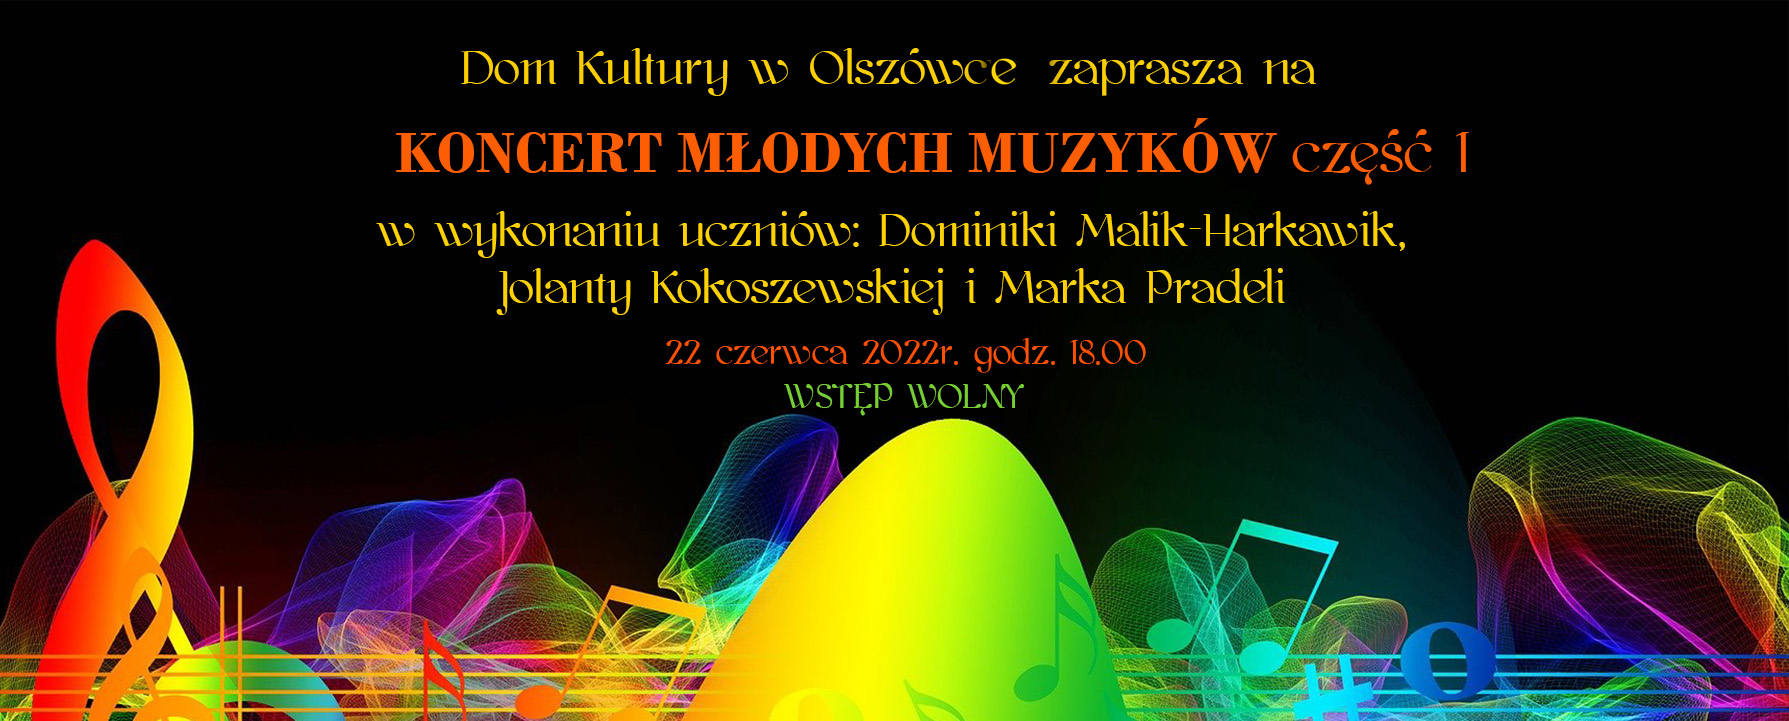  Koncert młodych muzyków Na zdjęciu plakat koncertu